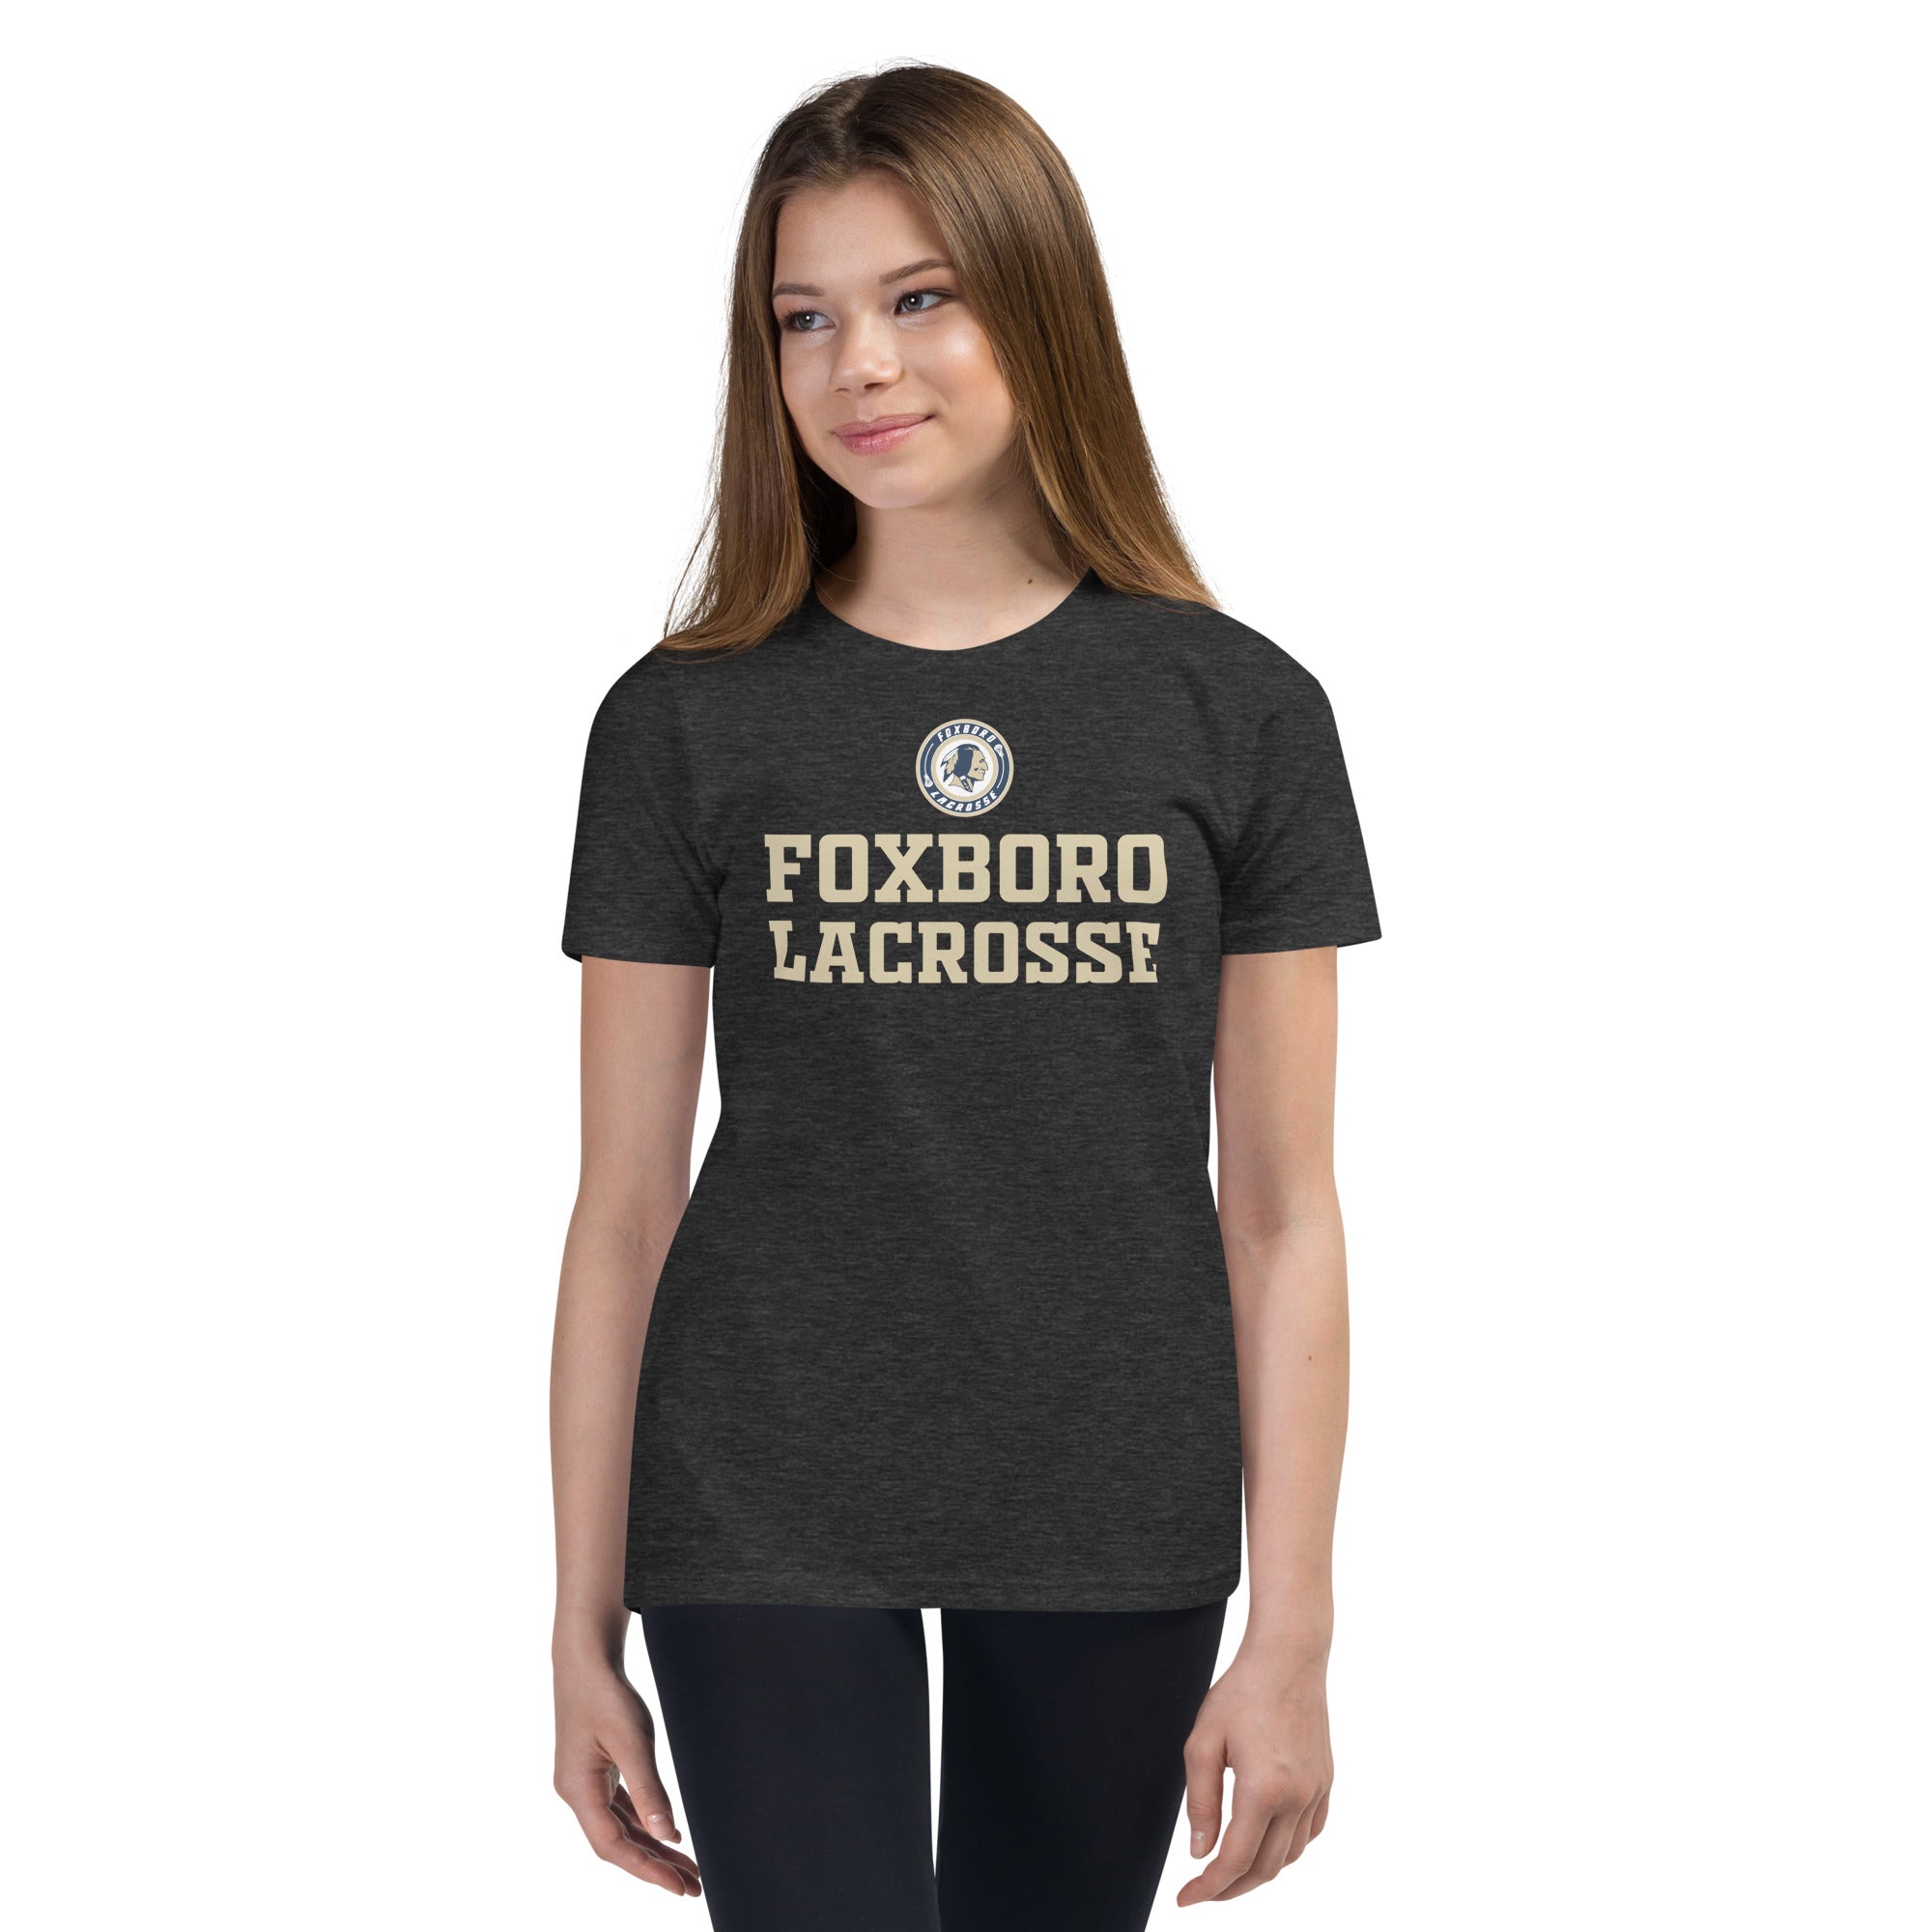 Foxboro Youth Short Sleeve T-Shirt